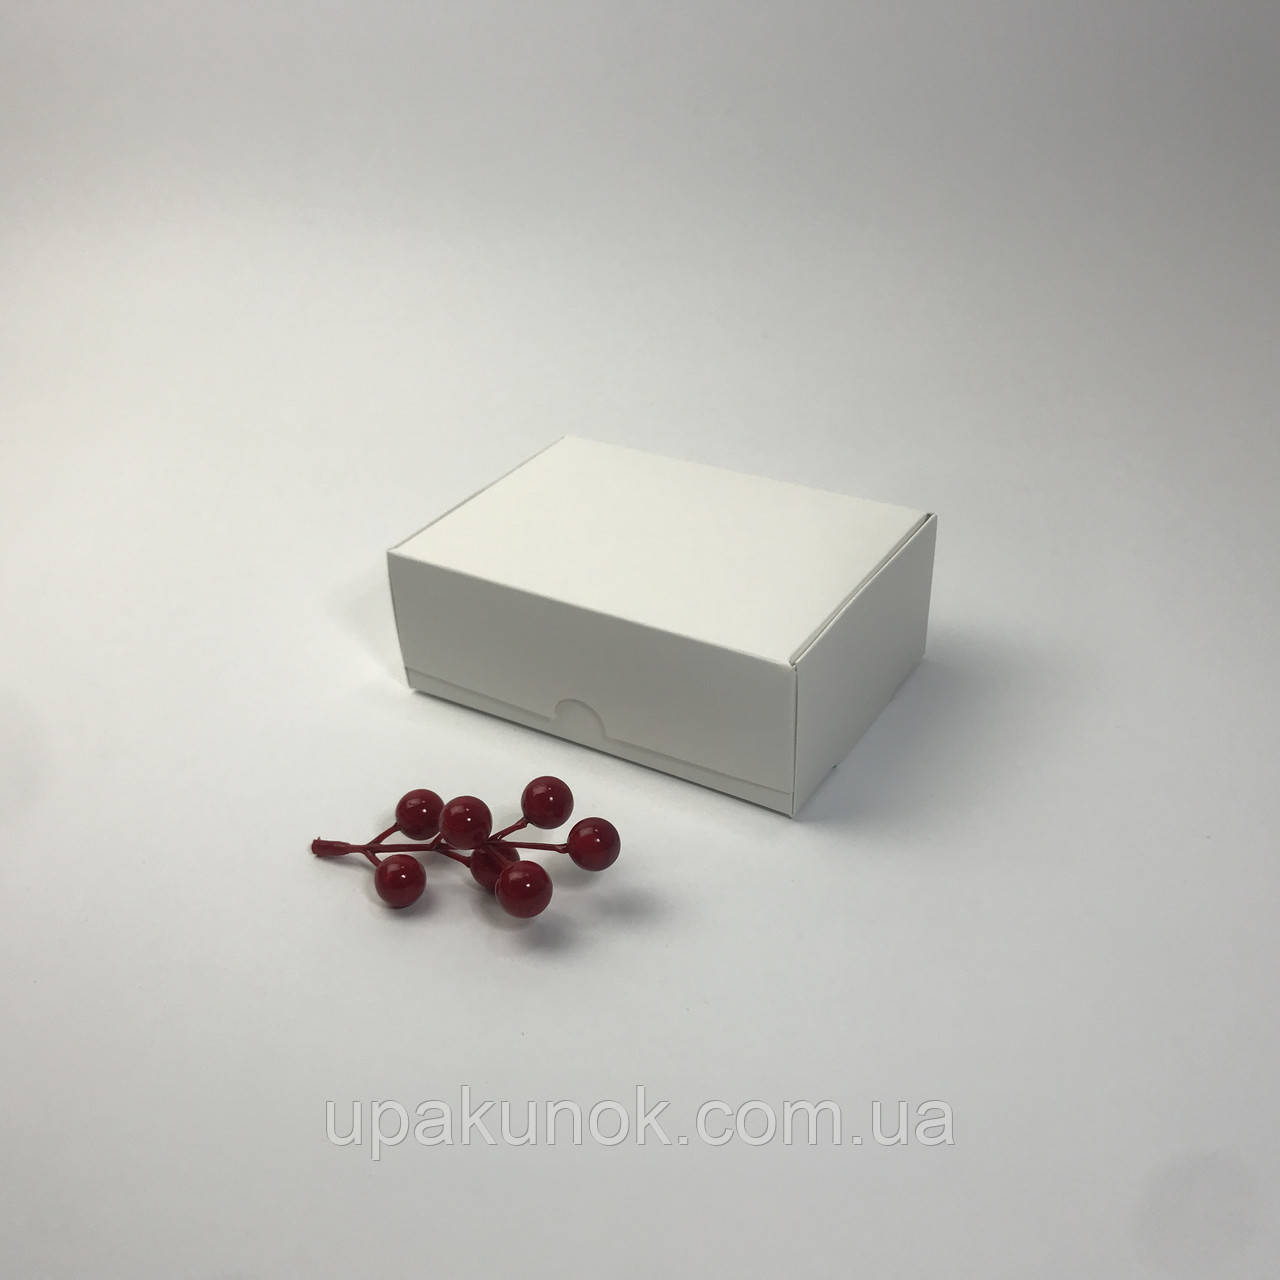 Коробка для макаронс і міні-еклерів, 140*100*50 мм, без вікна, біла